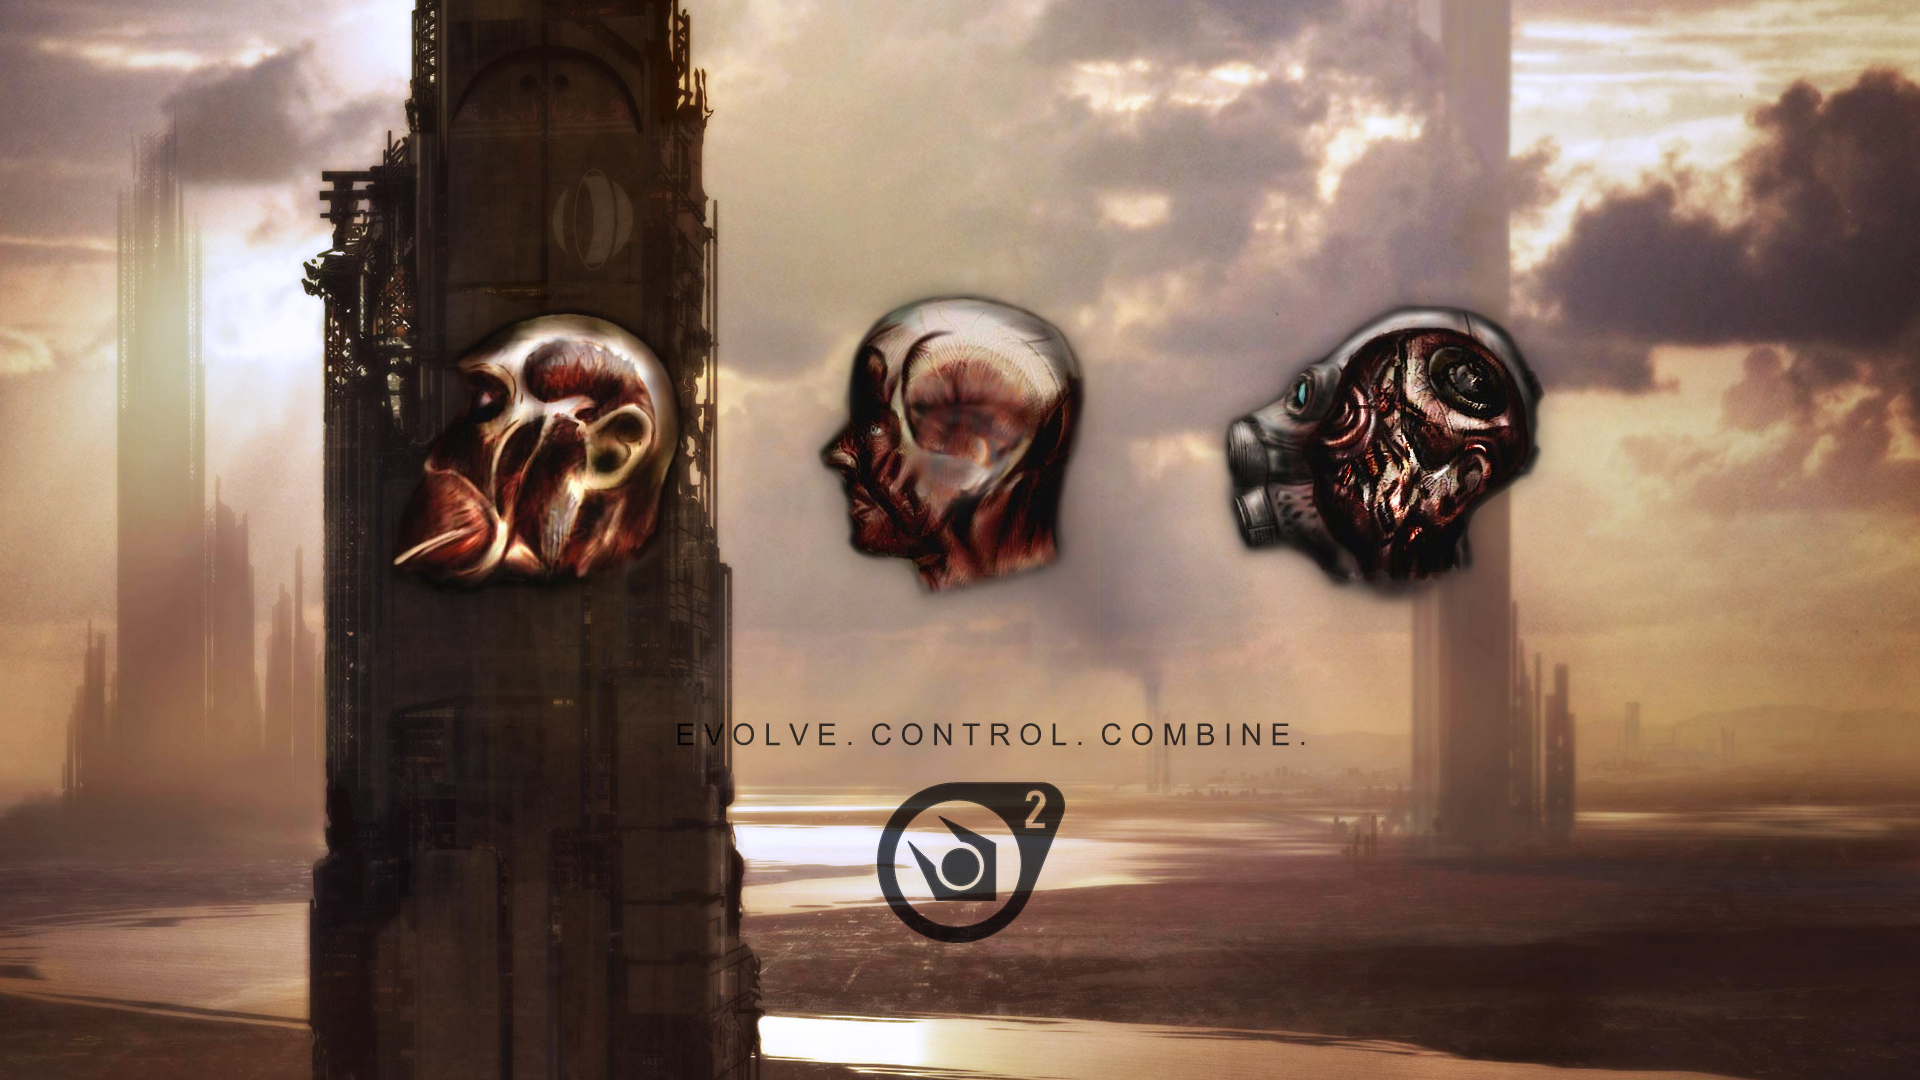 video games, Half-Life, Combine - desktop wallpaper